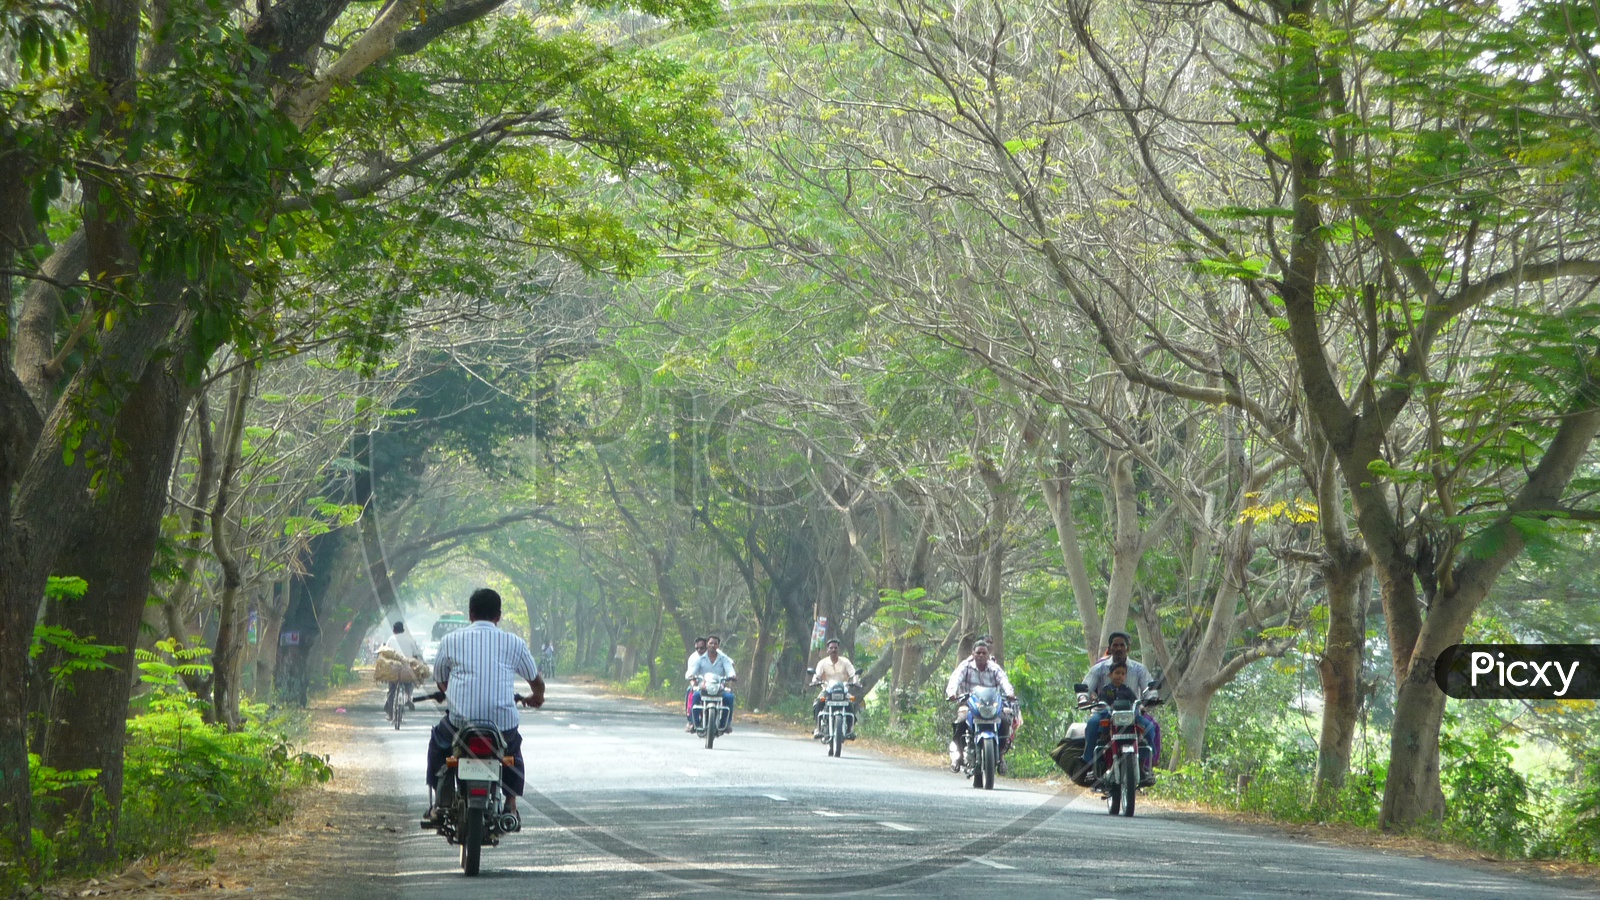 Road to Dindi Resorts